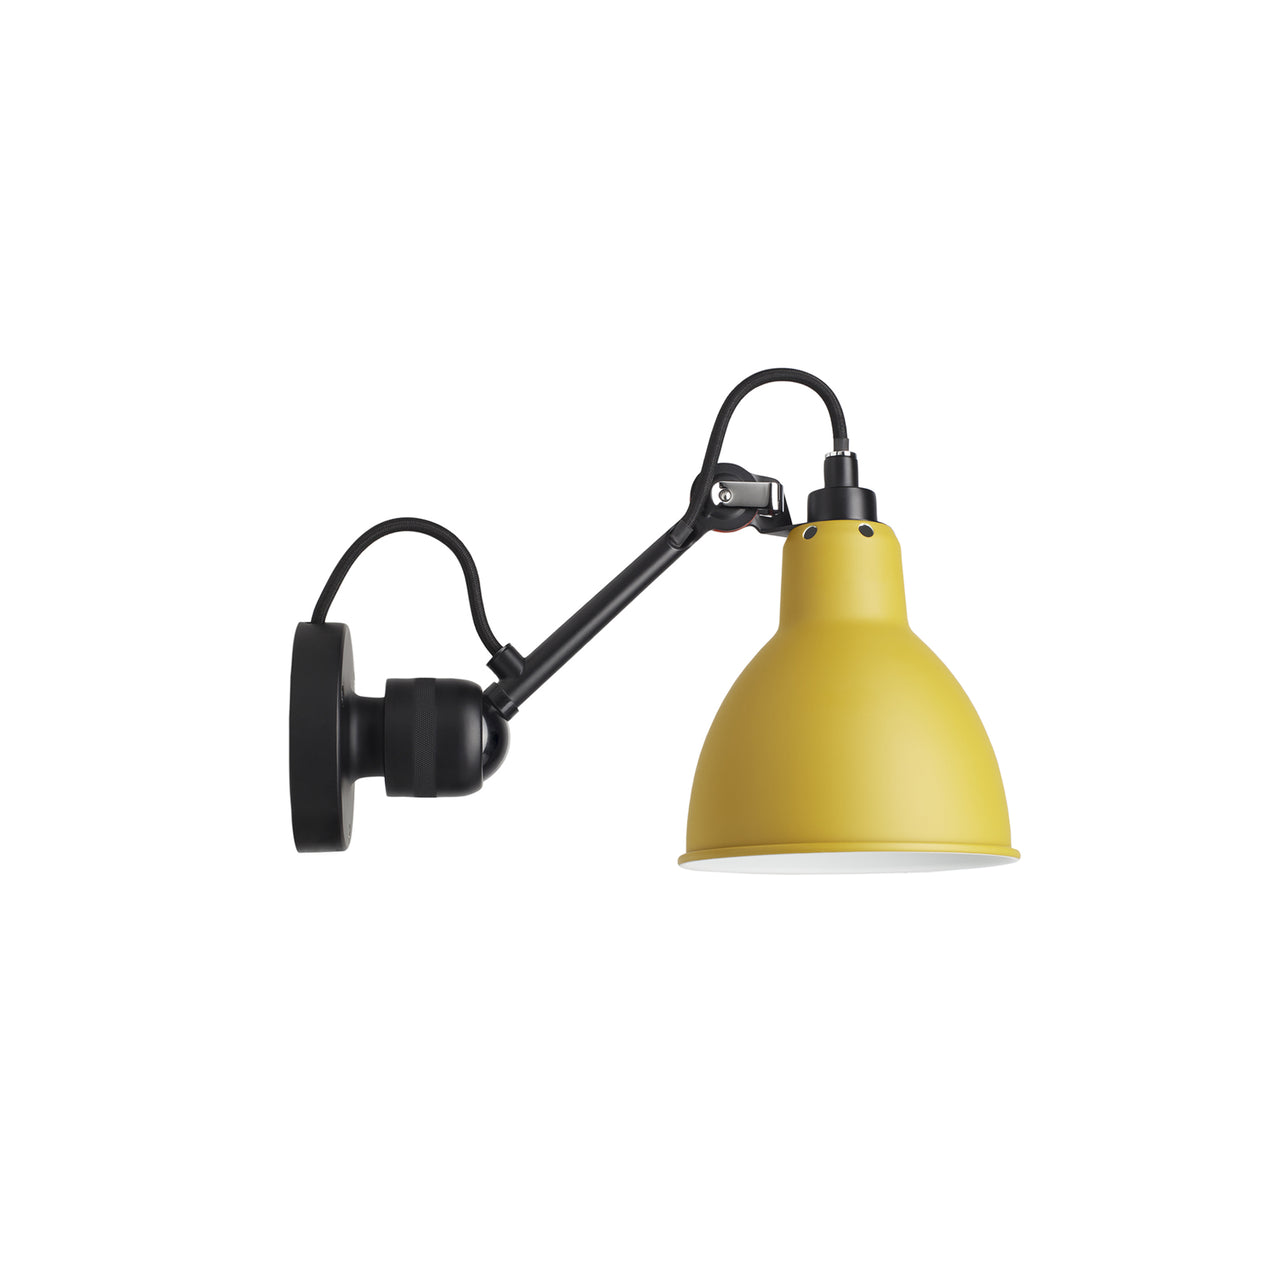 Lampe Gras N°304 Lamp: Black + Yellow + Round